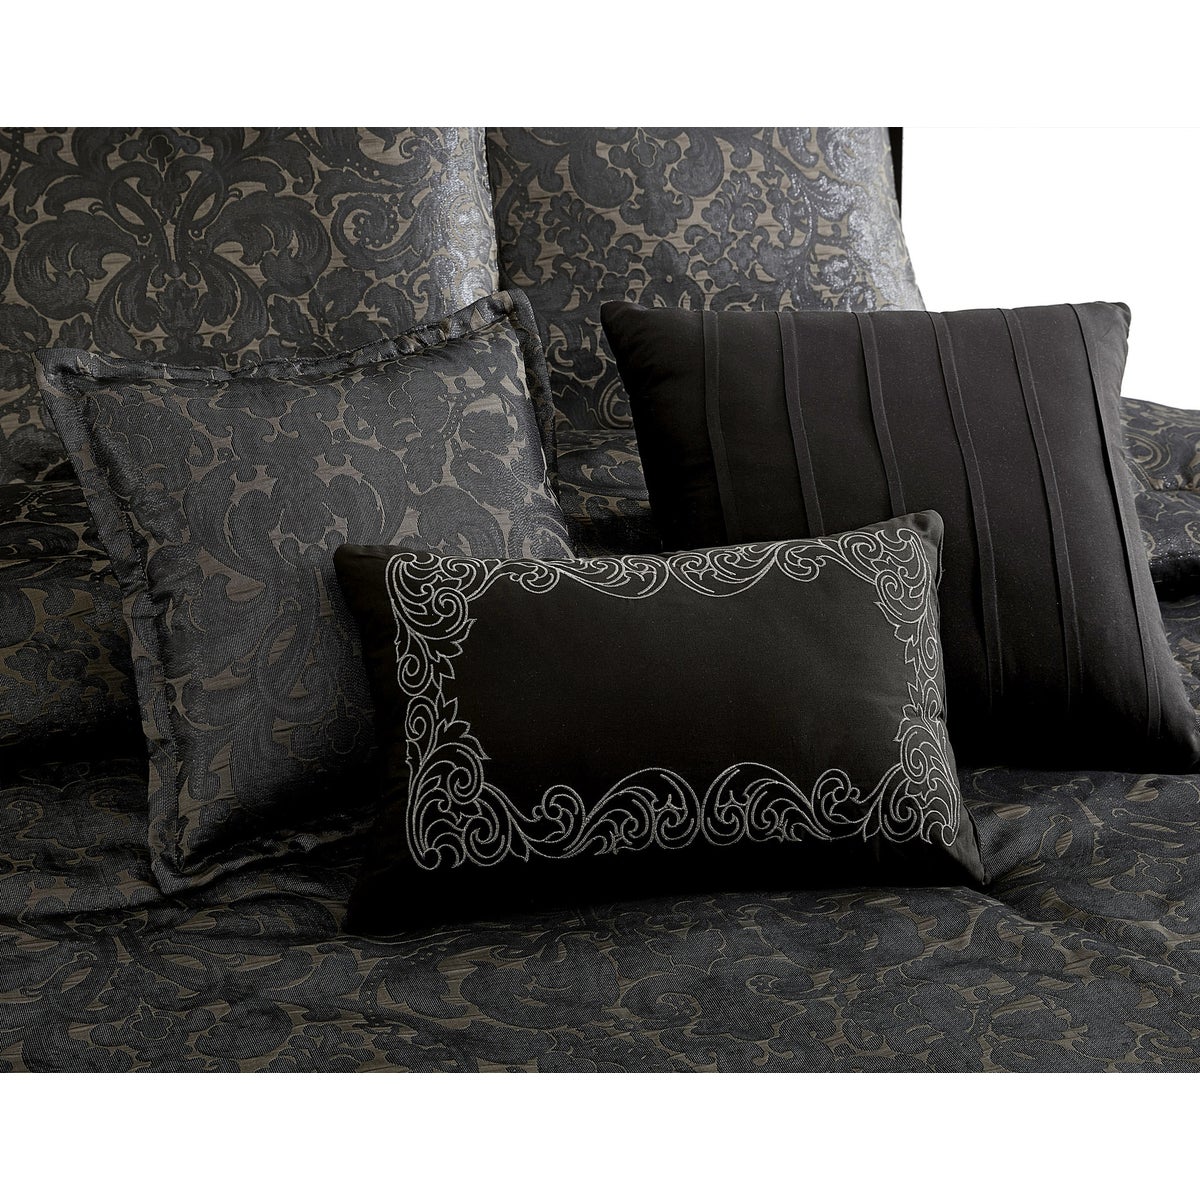 Dexton 9 pc Queen Comforter Set  Tan/Black